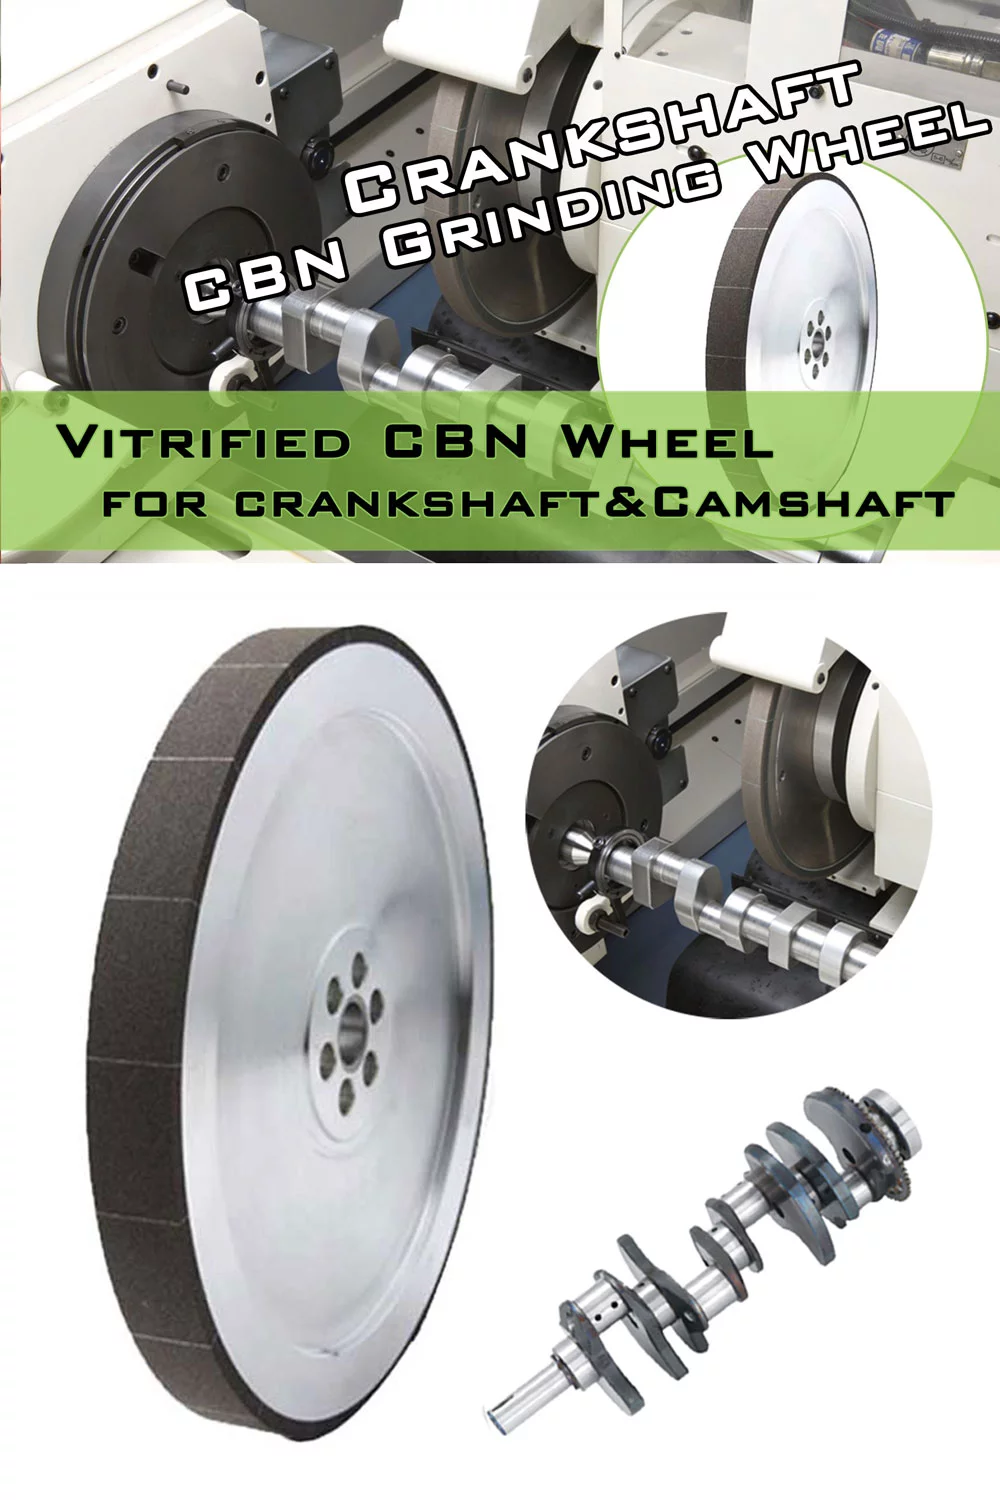 Grinding-Crankshaft-CBN-Grinding-Wheel-Cover